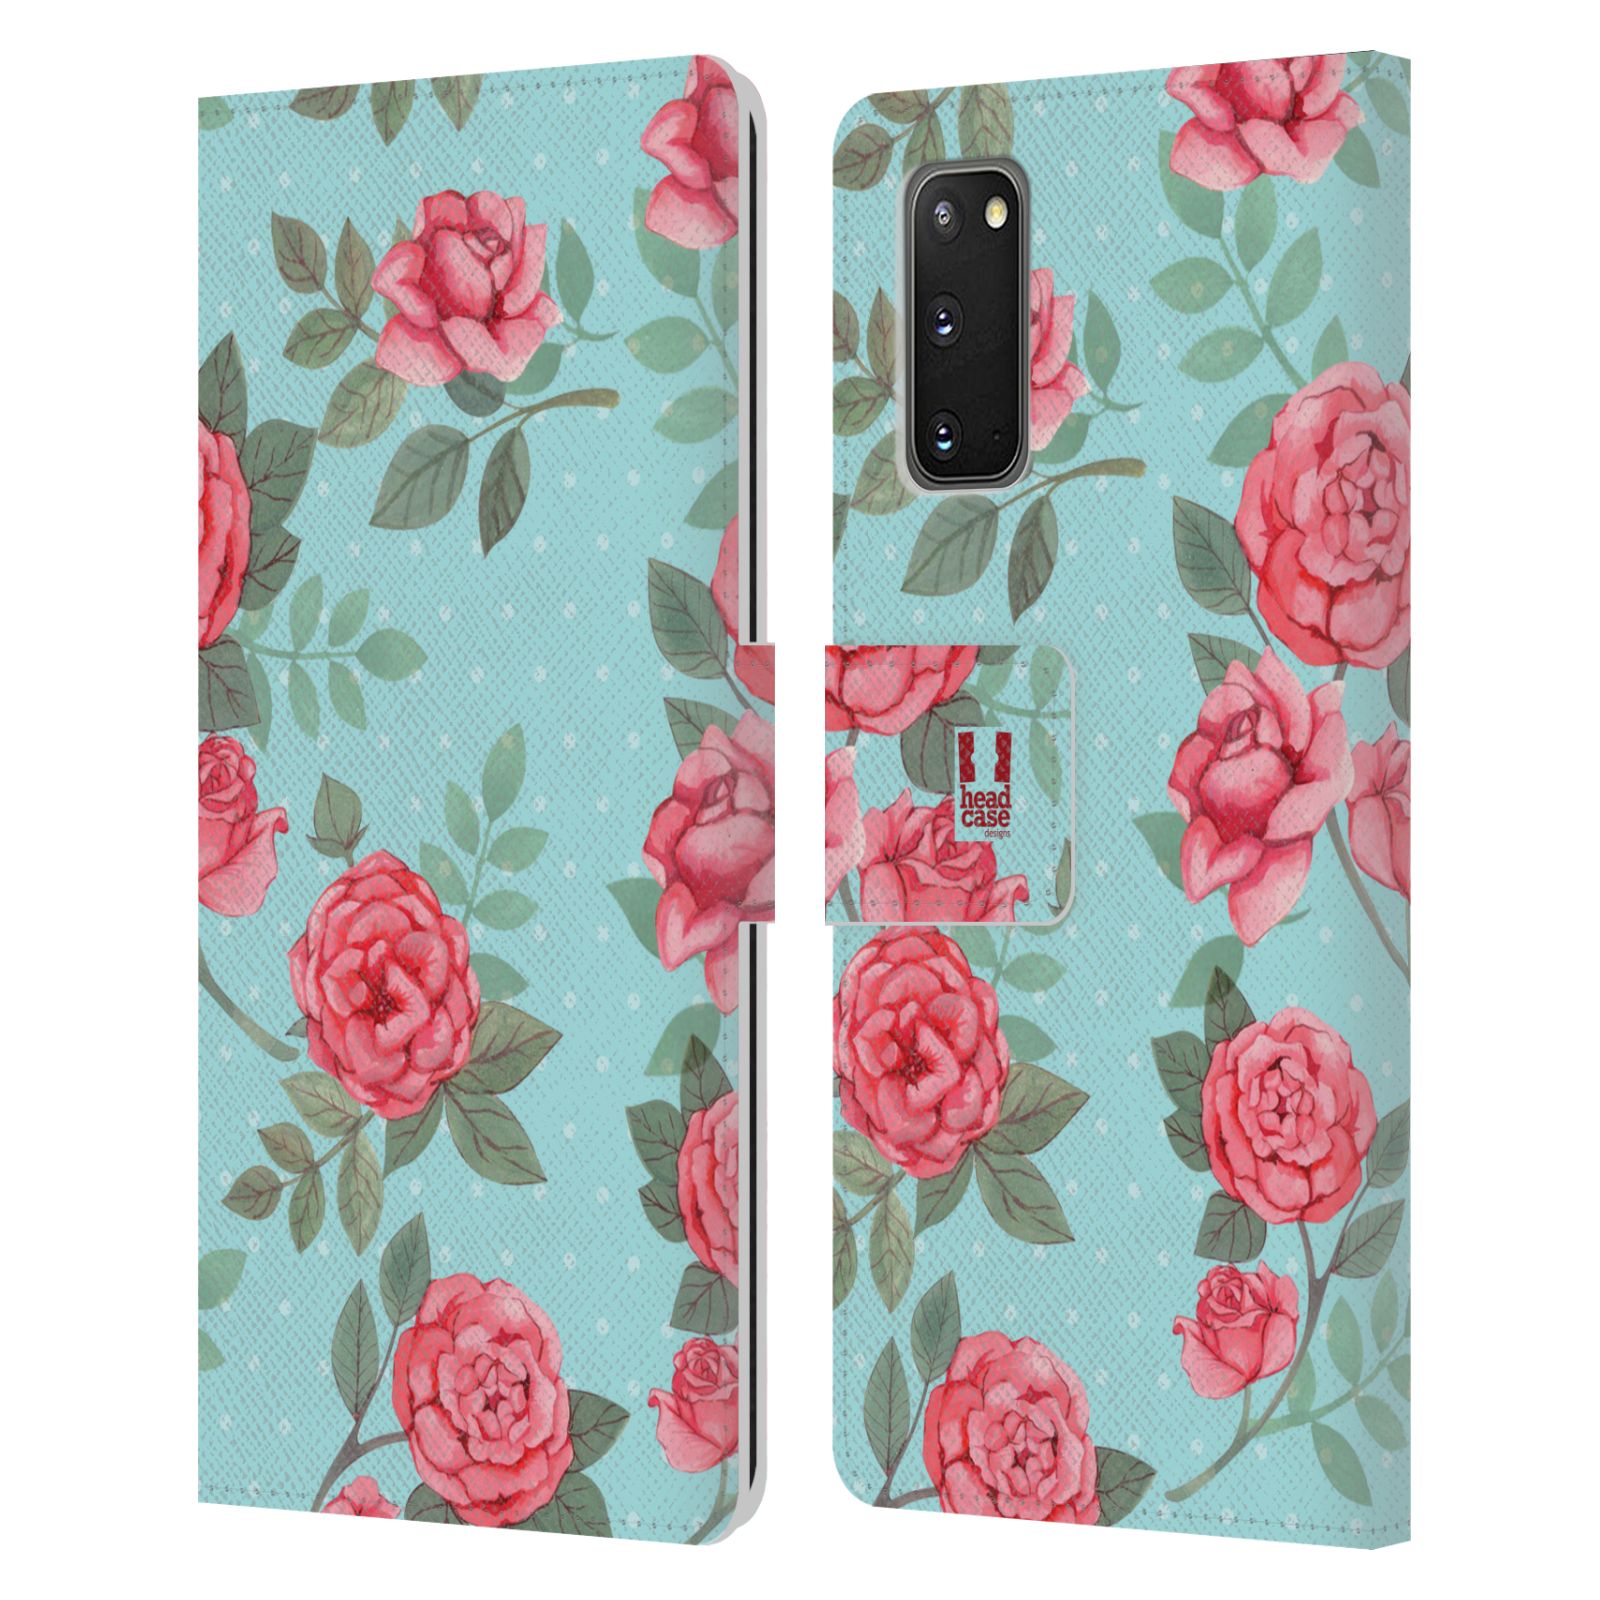 Pouzdro na mobil Samsung Galaxy S20 romantické květy velké růže modrá a růžová